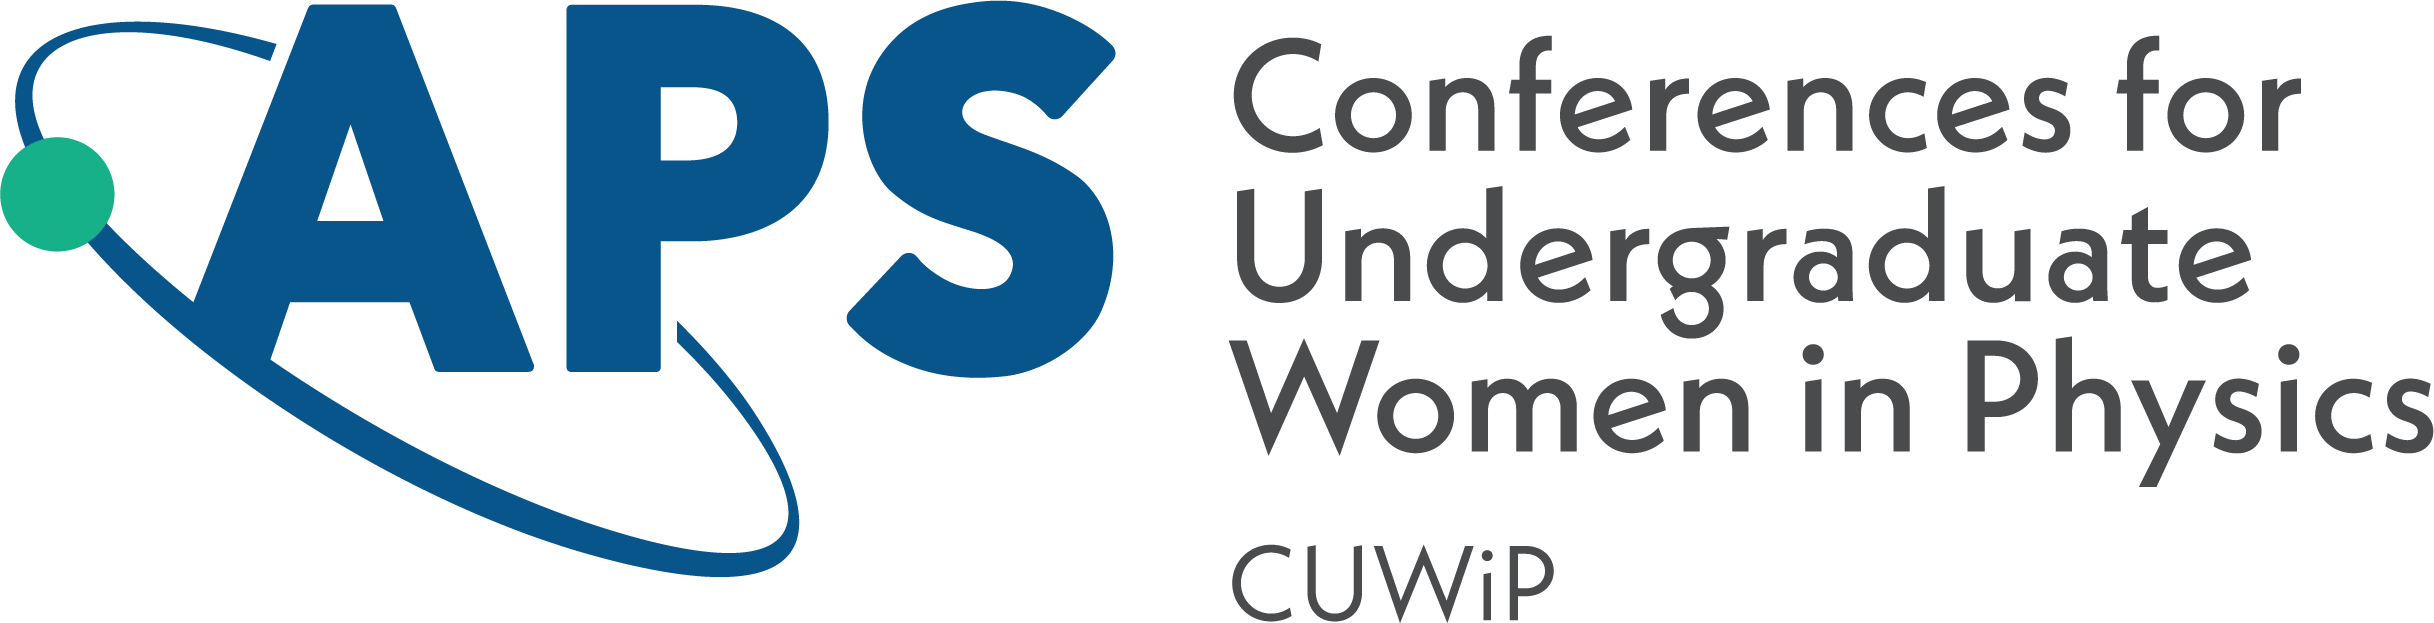 CUWiP logo